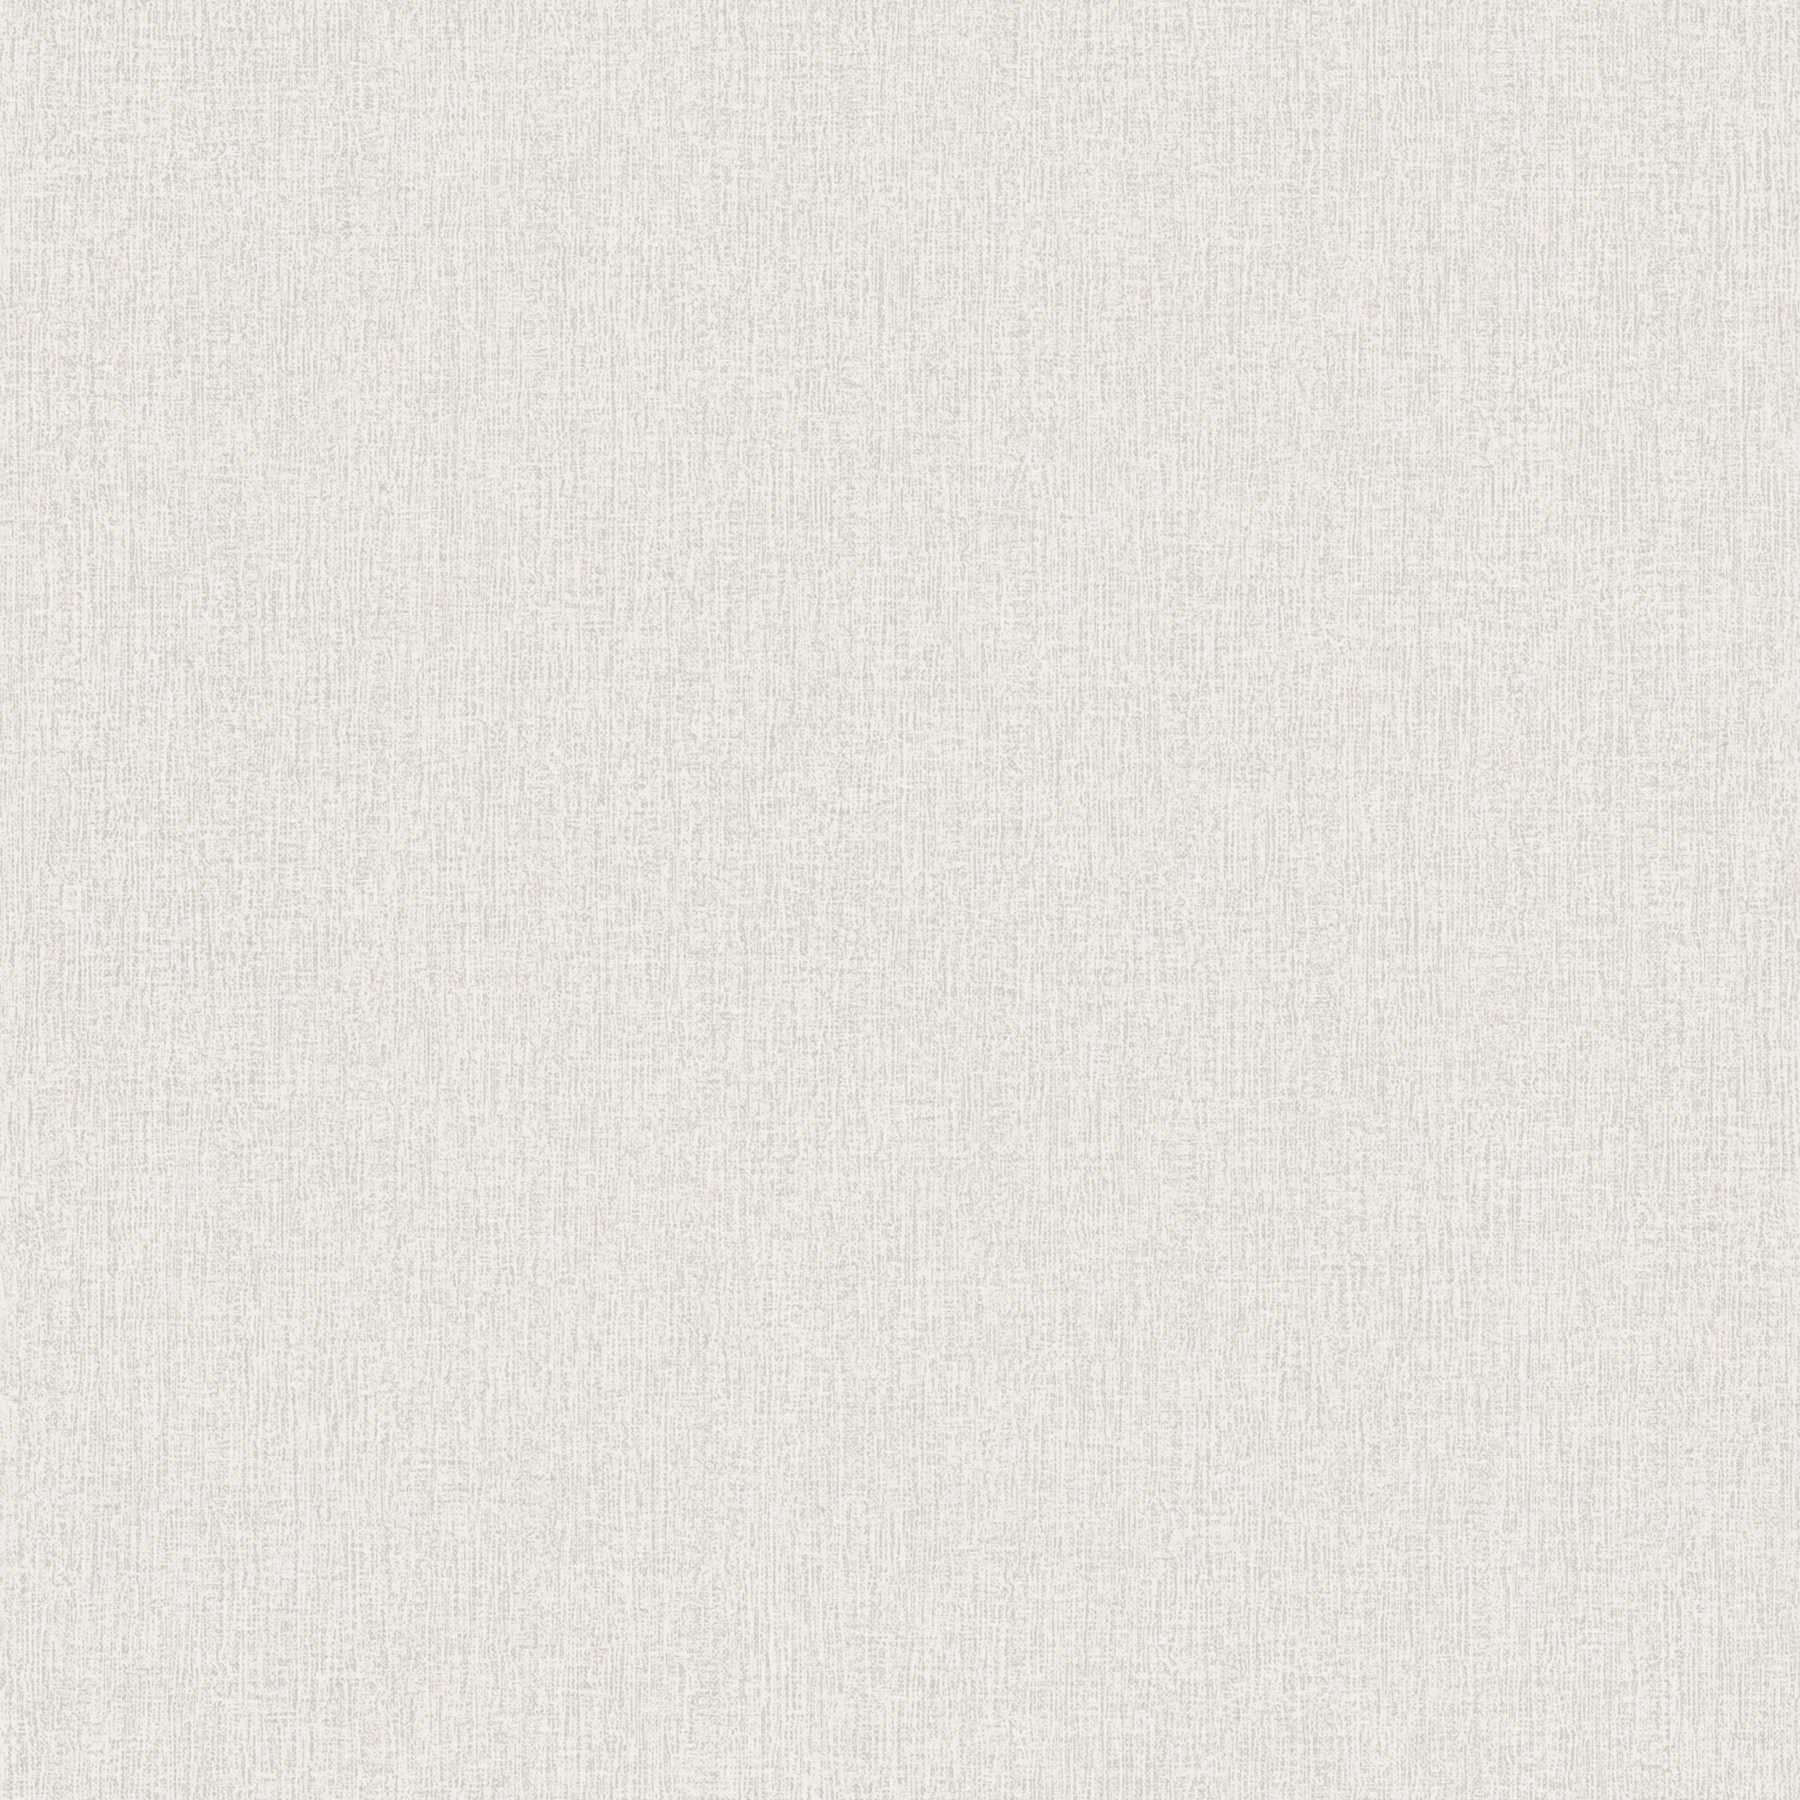 Einfarbige Tapete meliert, mit Gewebestruktur – Weiß, Grau
